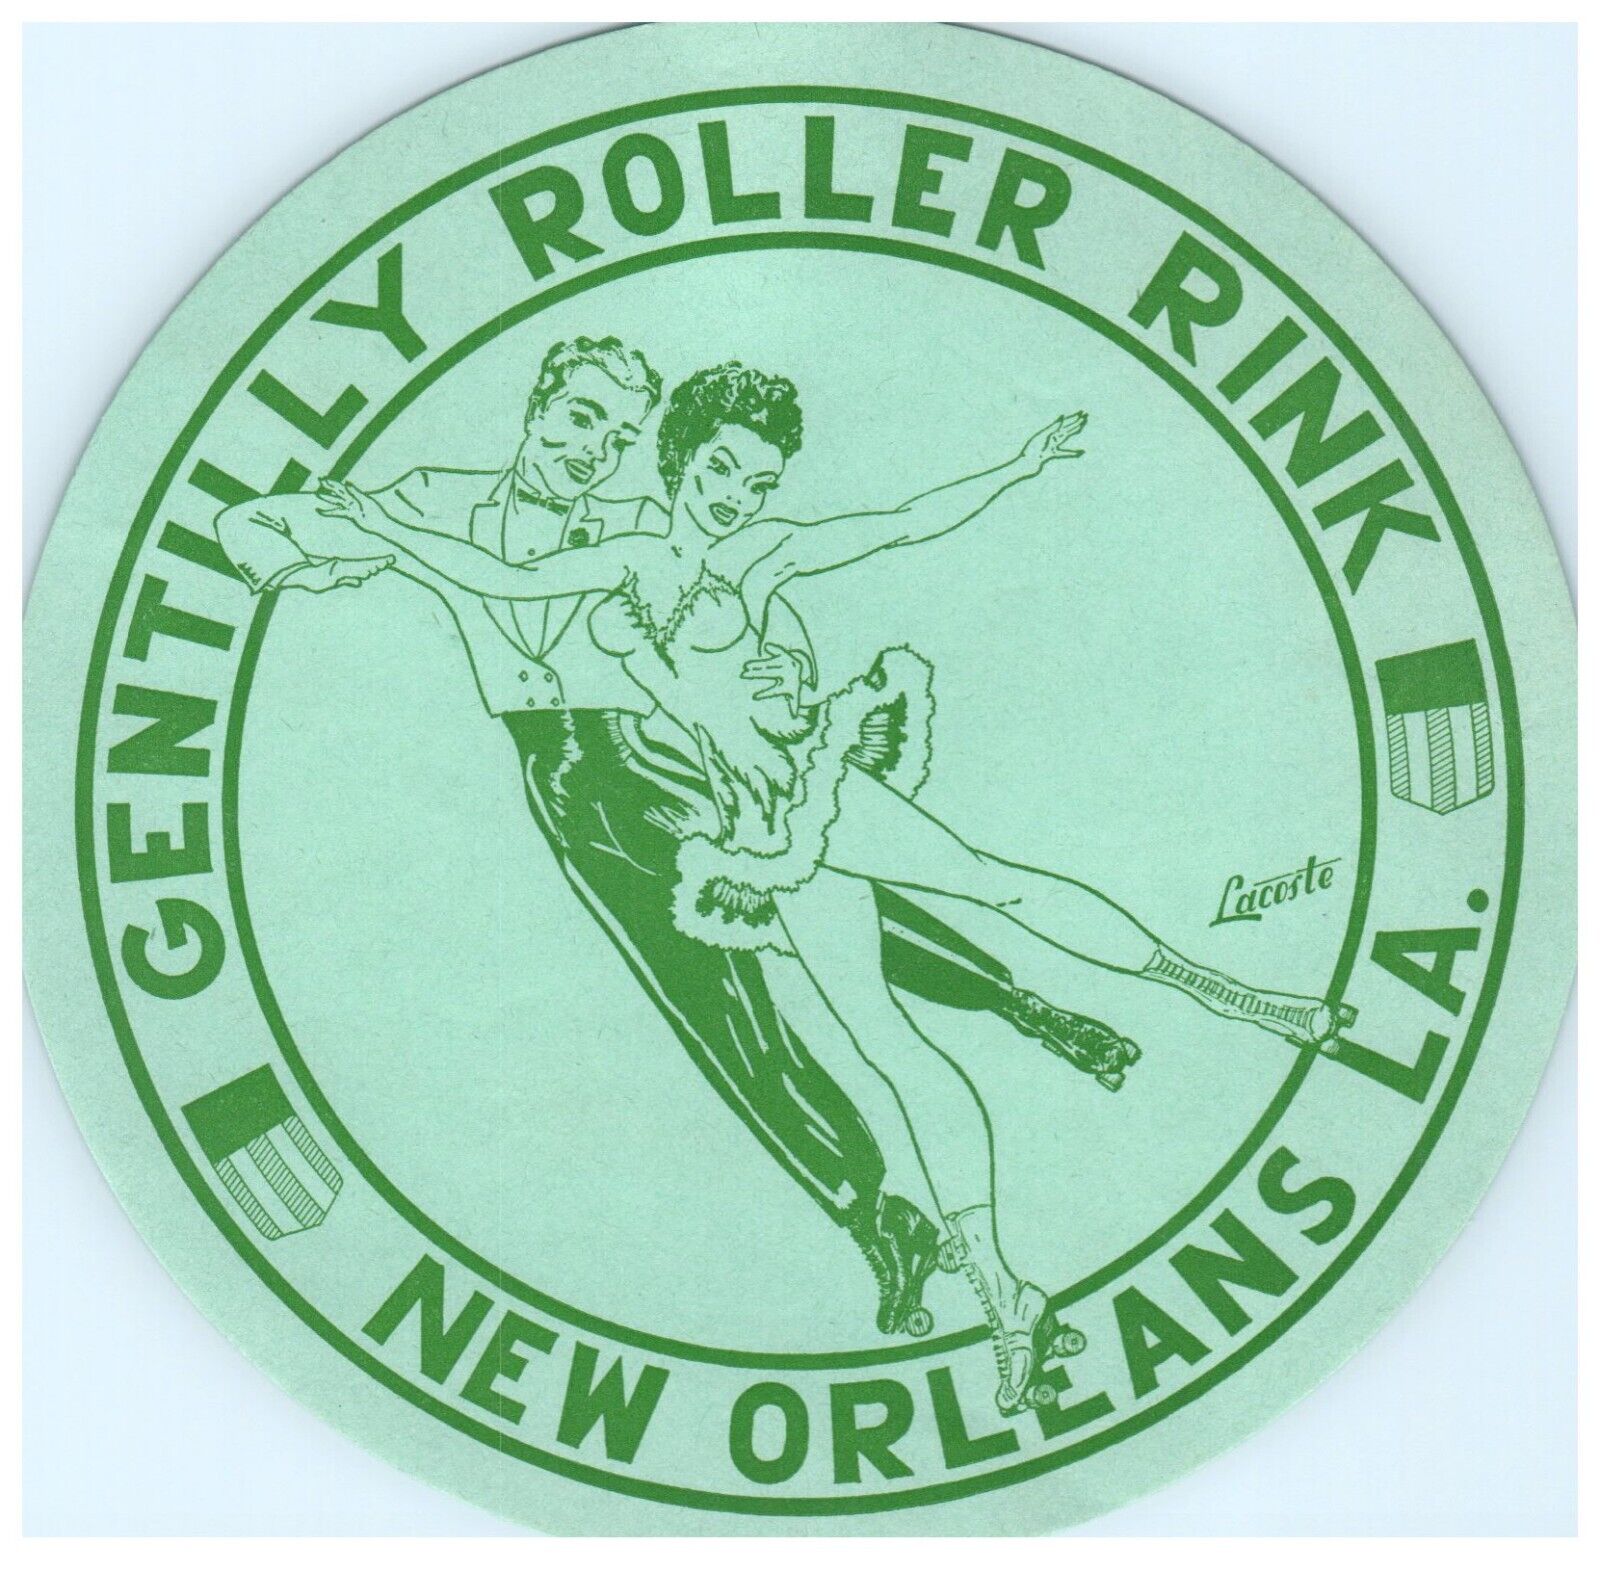 Original Vintage 1940s Roller Skating Rink Sticker New Orleans LA S6